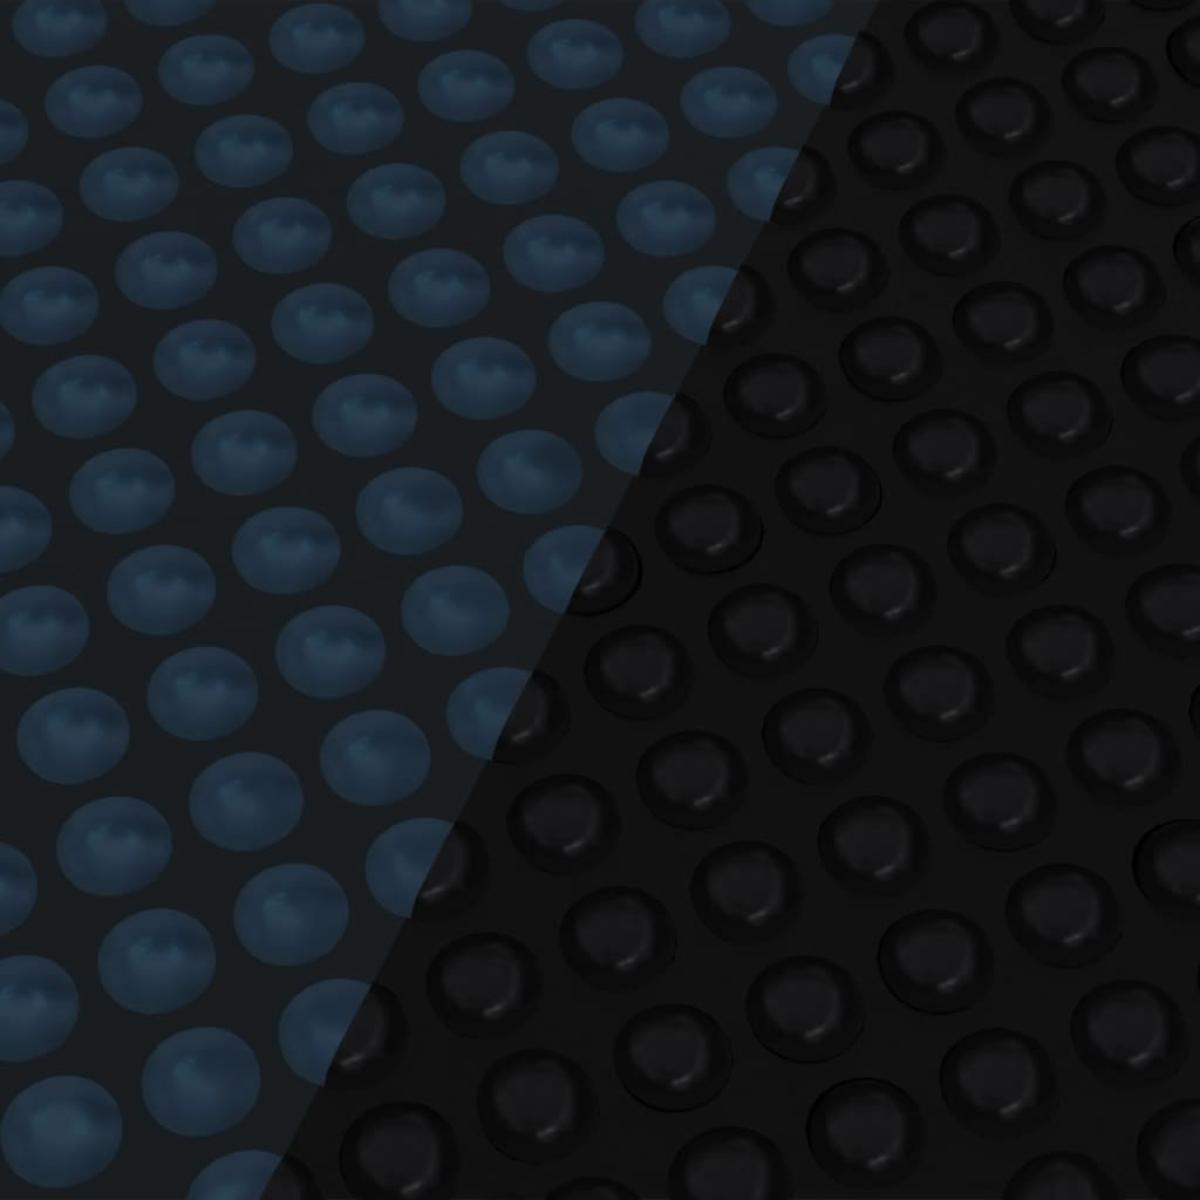 Cubierta solar de piscina de PE flotante negro y azul 250 cm